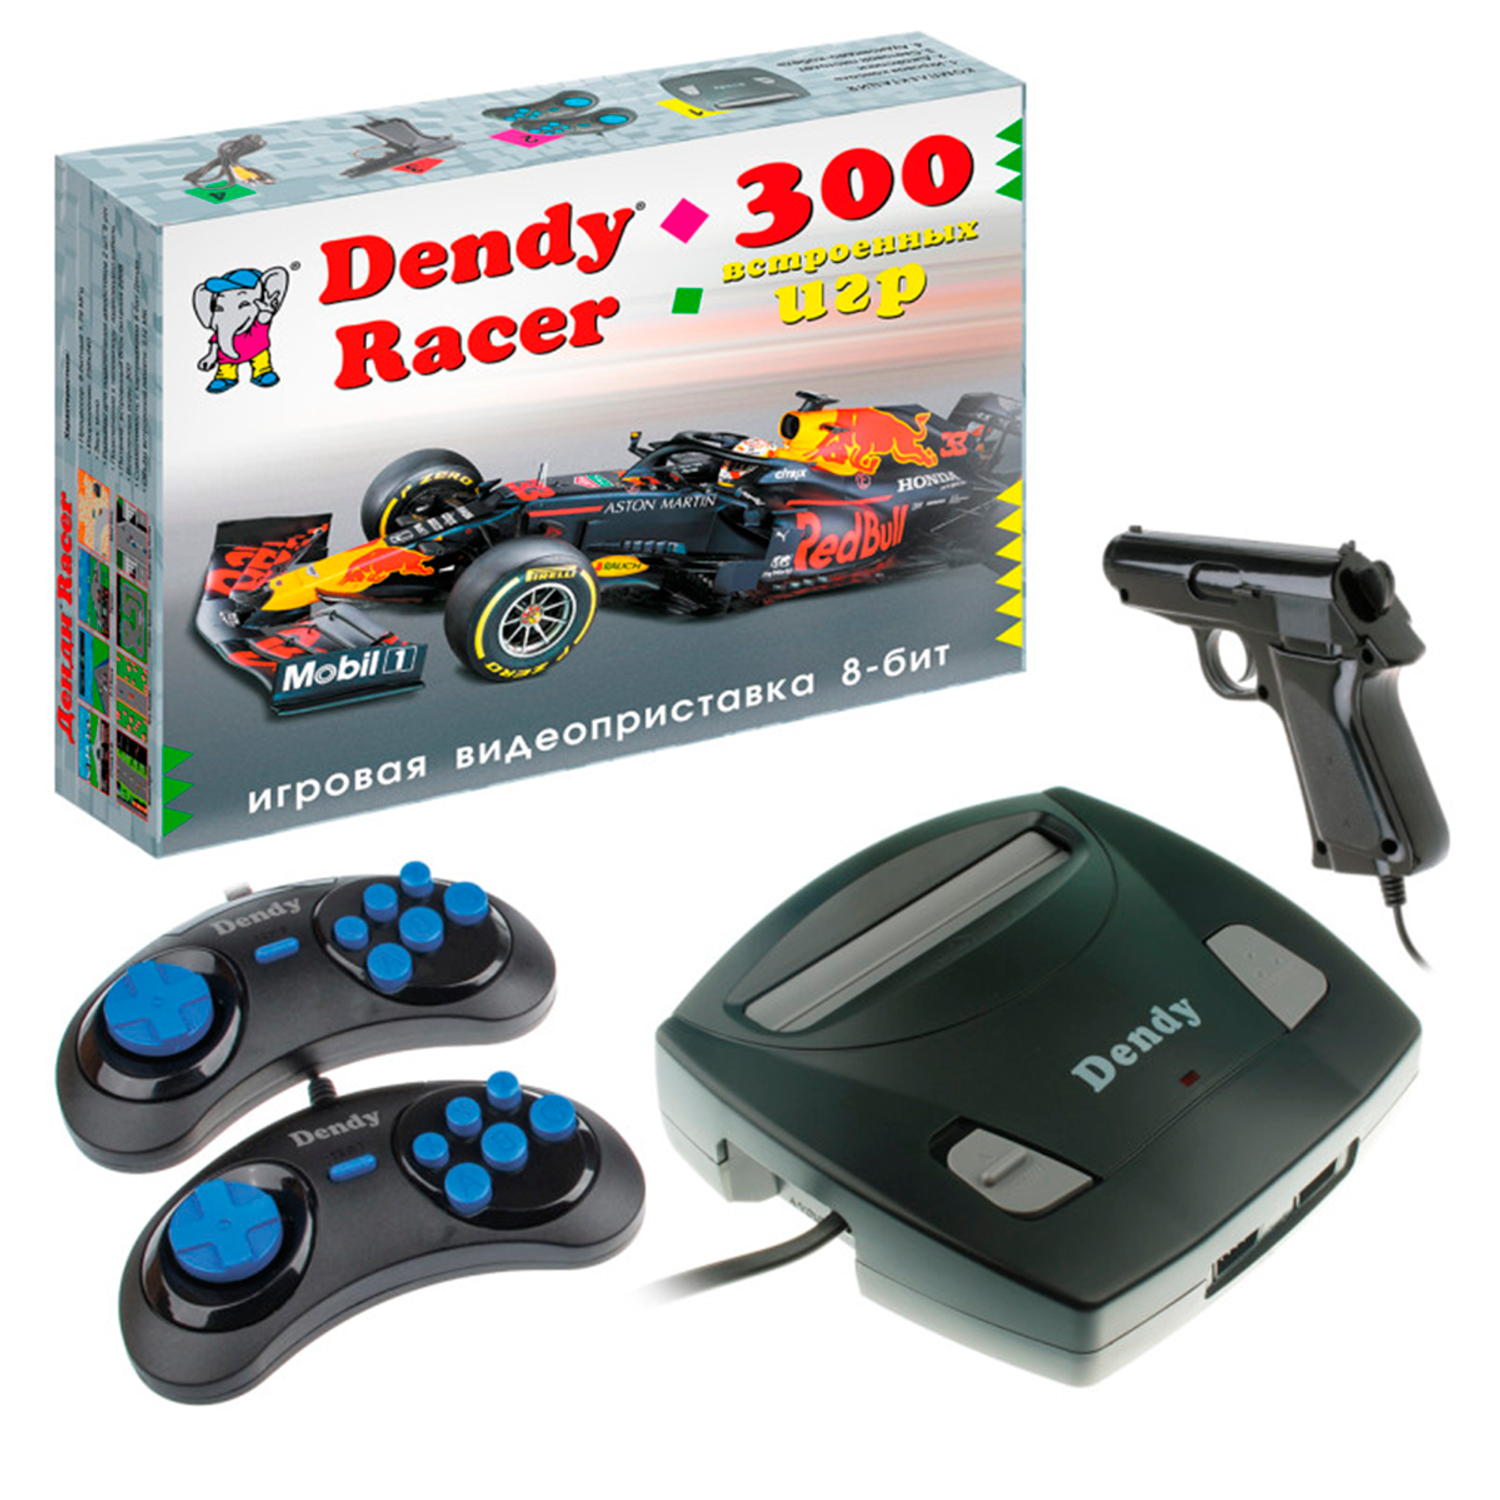 Игровая приставка Dendy Racer 300 игр и световой пистолет - фото 1